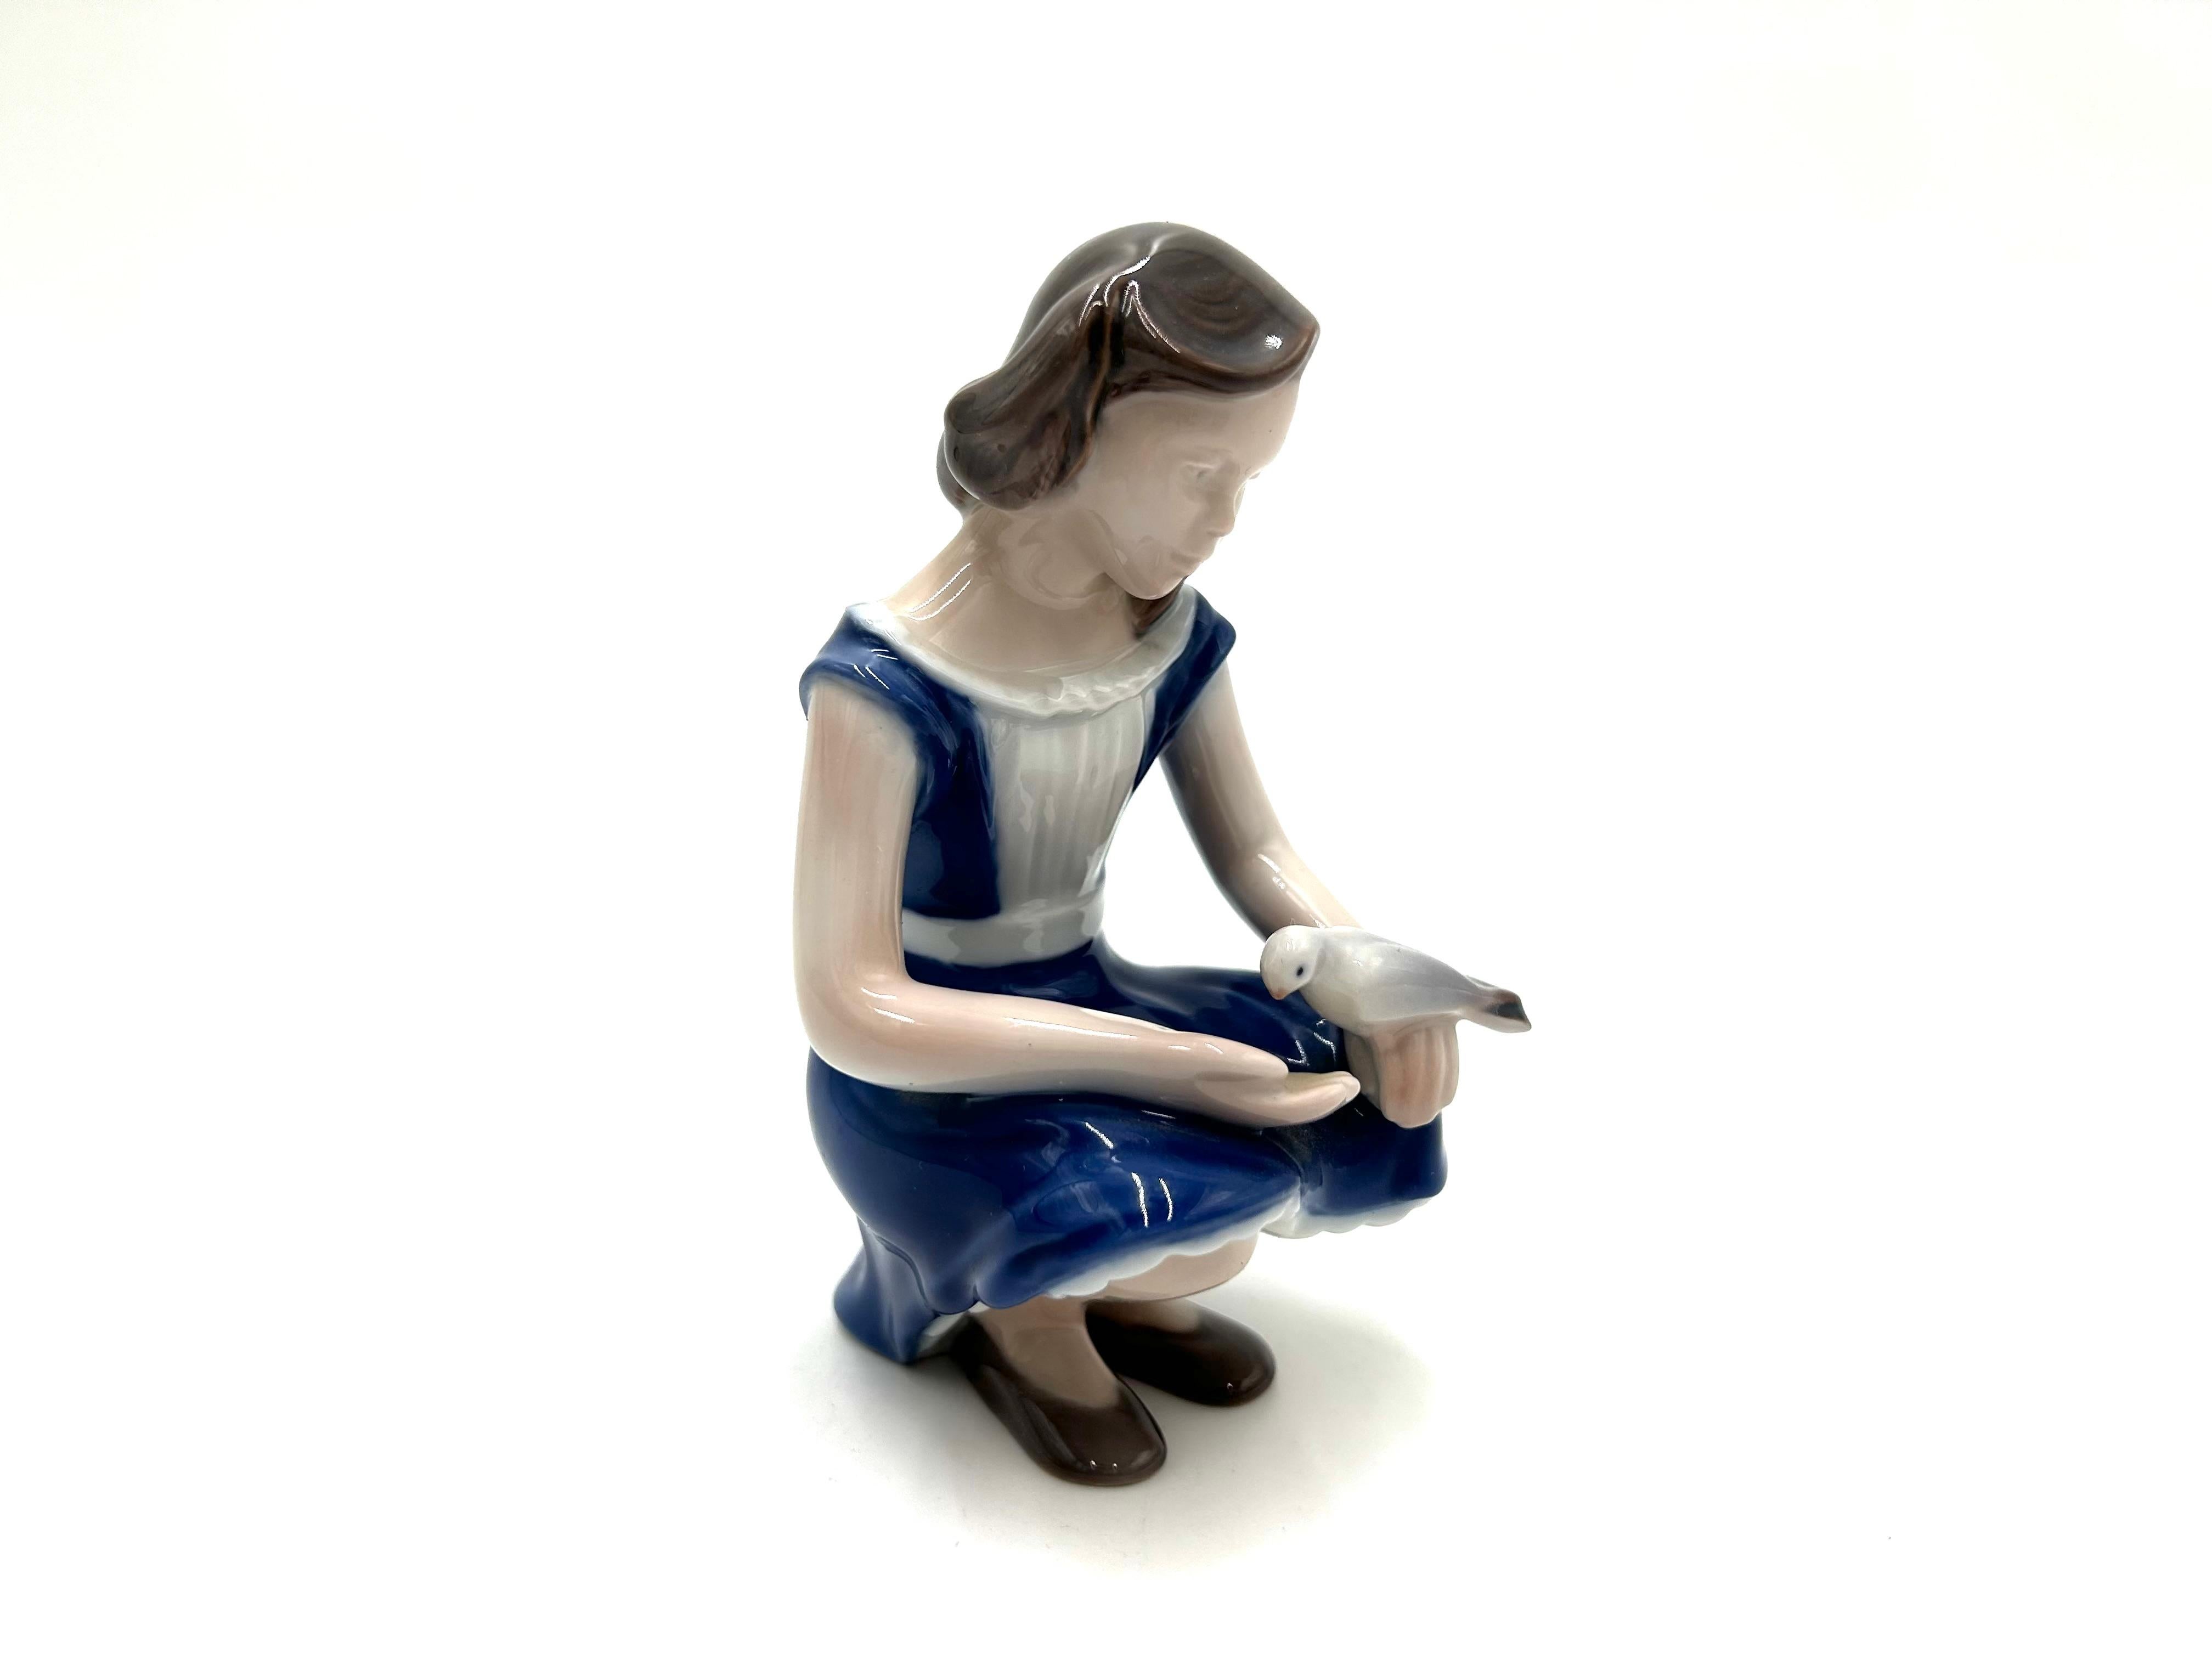 Figurine en porcelaine d'une fille avec un oiseau

Produit par la manufacture danoise Bing & Grondahl

La marque est utilisée dans les années 1960.

Très bon état, sans dommage.

hauteur : 13cm

largeur : 8cm

profondeur : 8cm